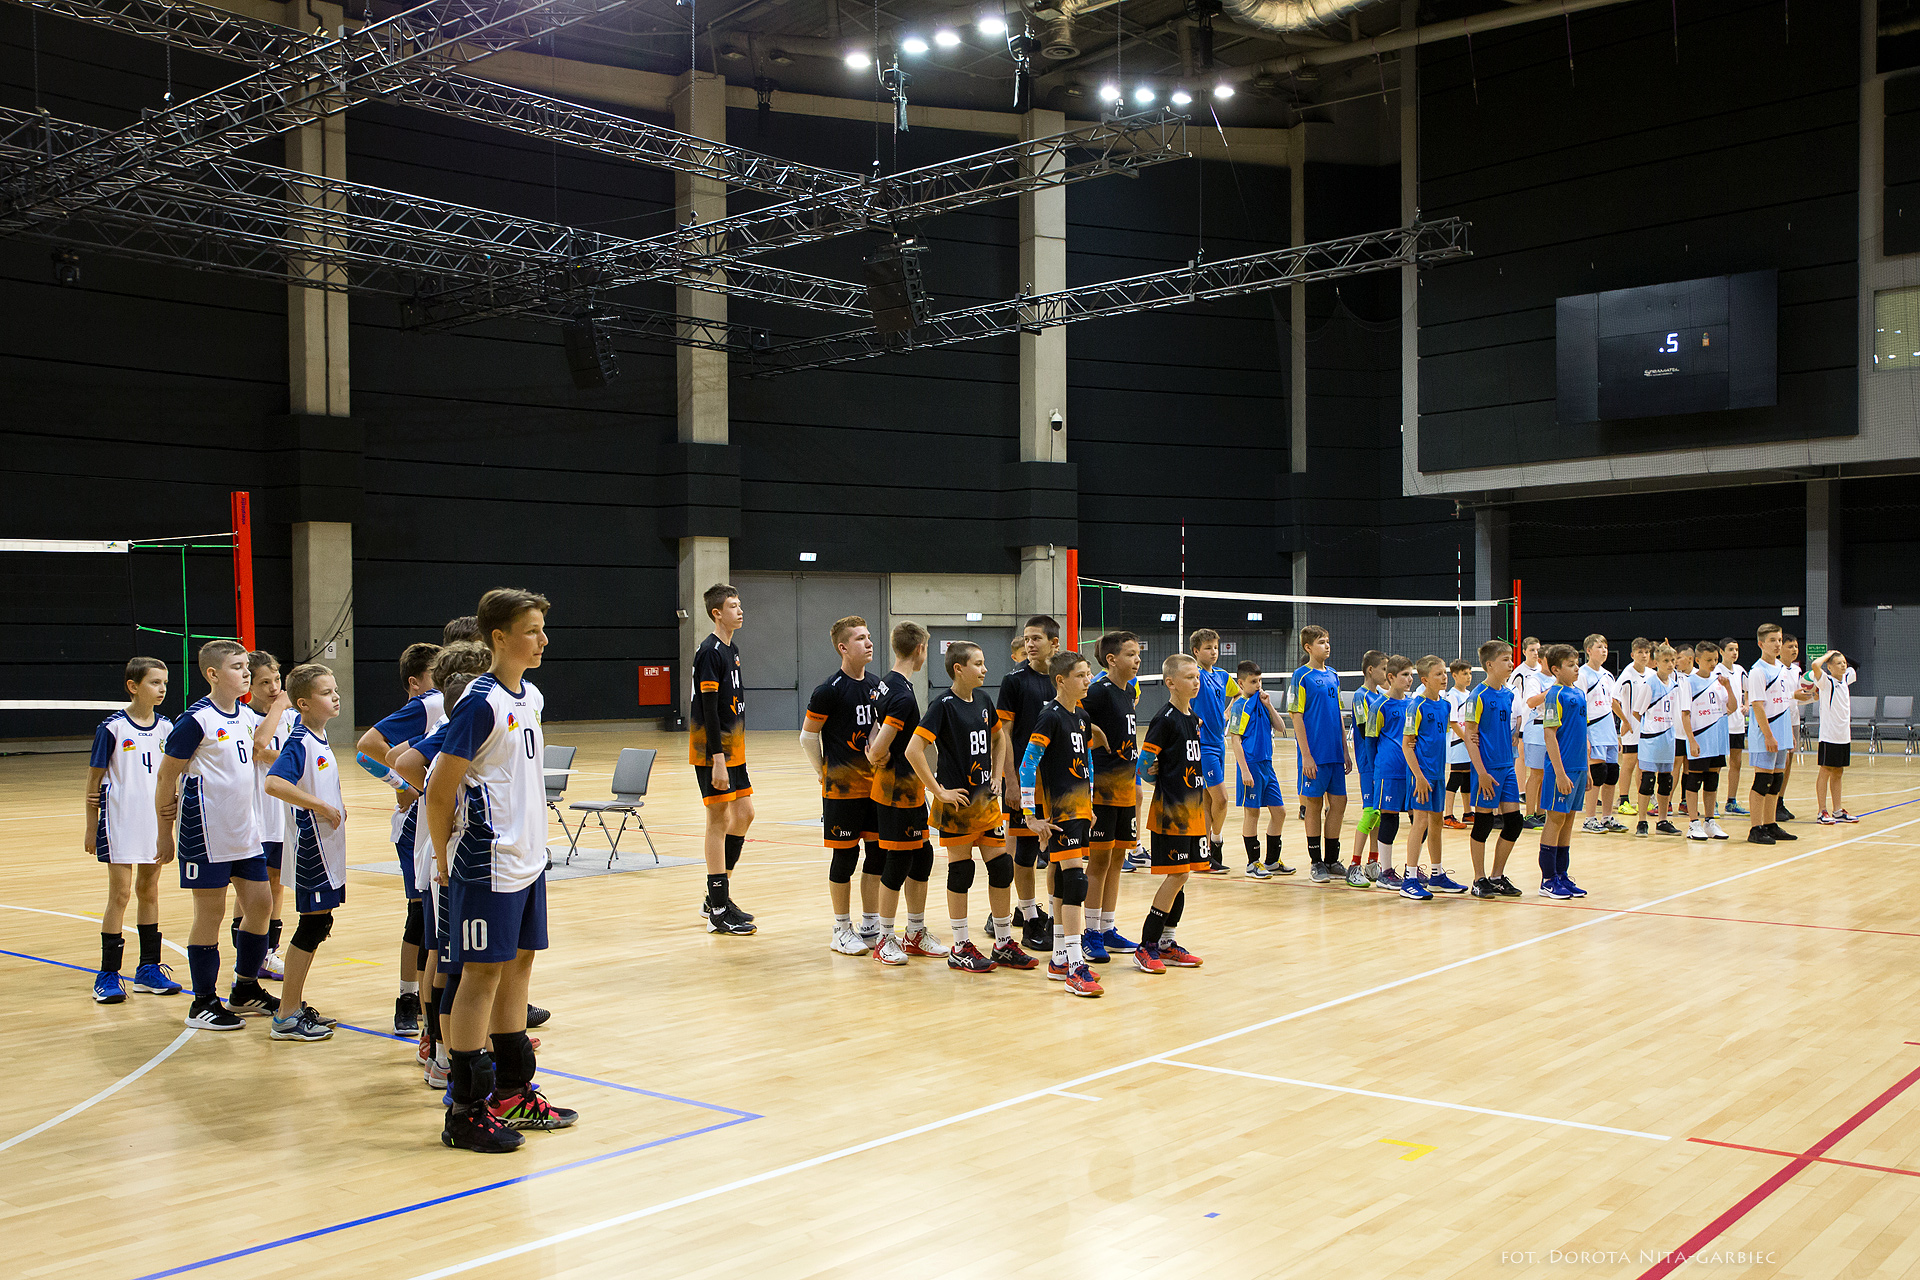 Finały wojewódzkie w piłce siatkowei i piłce ręcznej Szkolnego Związku Sportowego w hali Arena Gliwice